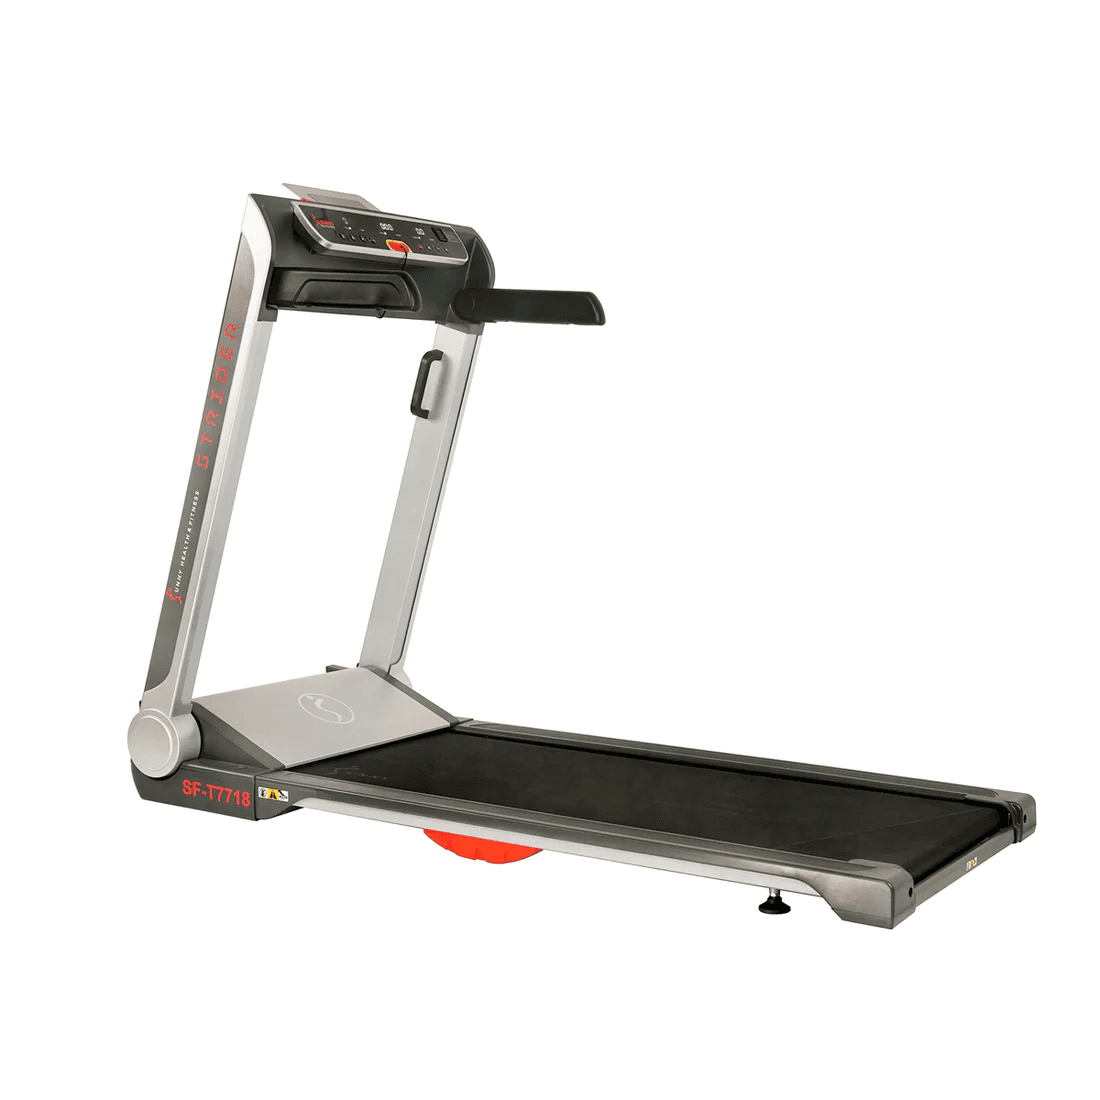 Sunny Health & Fitness SF-T7718 Pro Treadmill